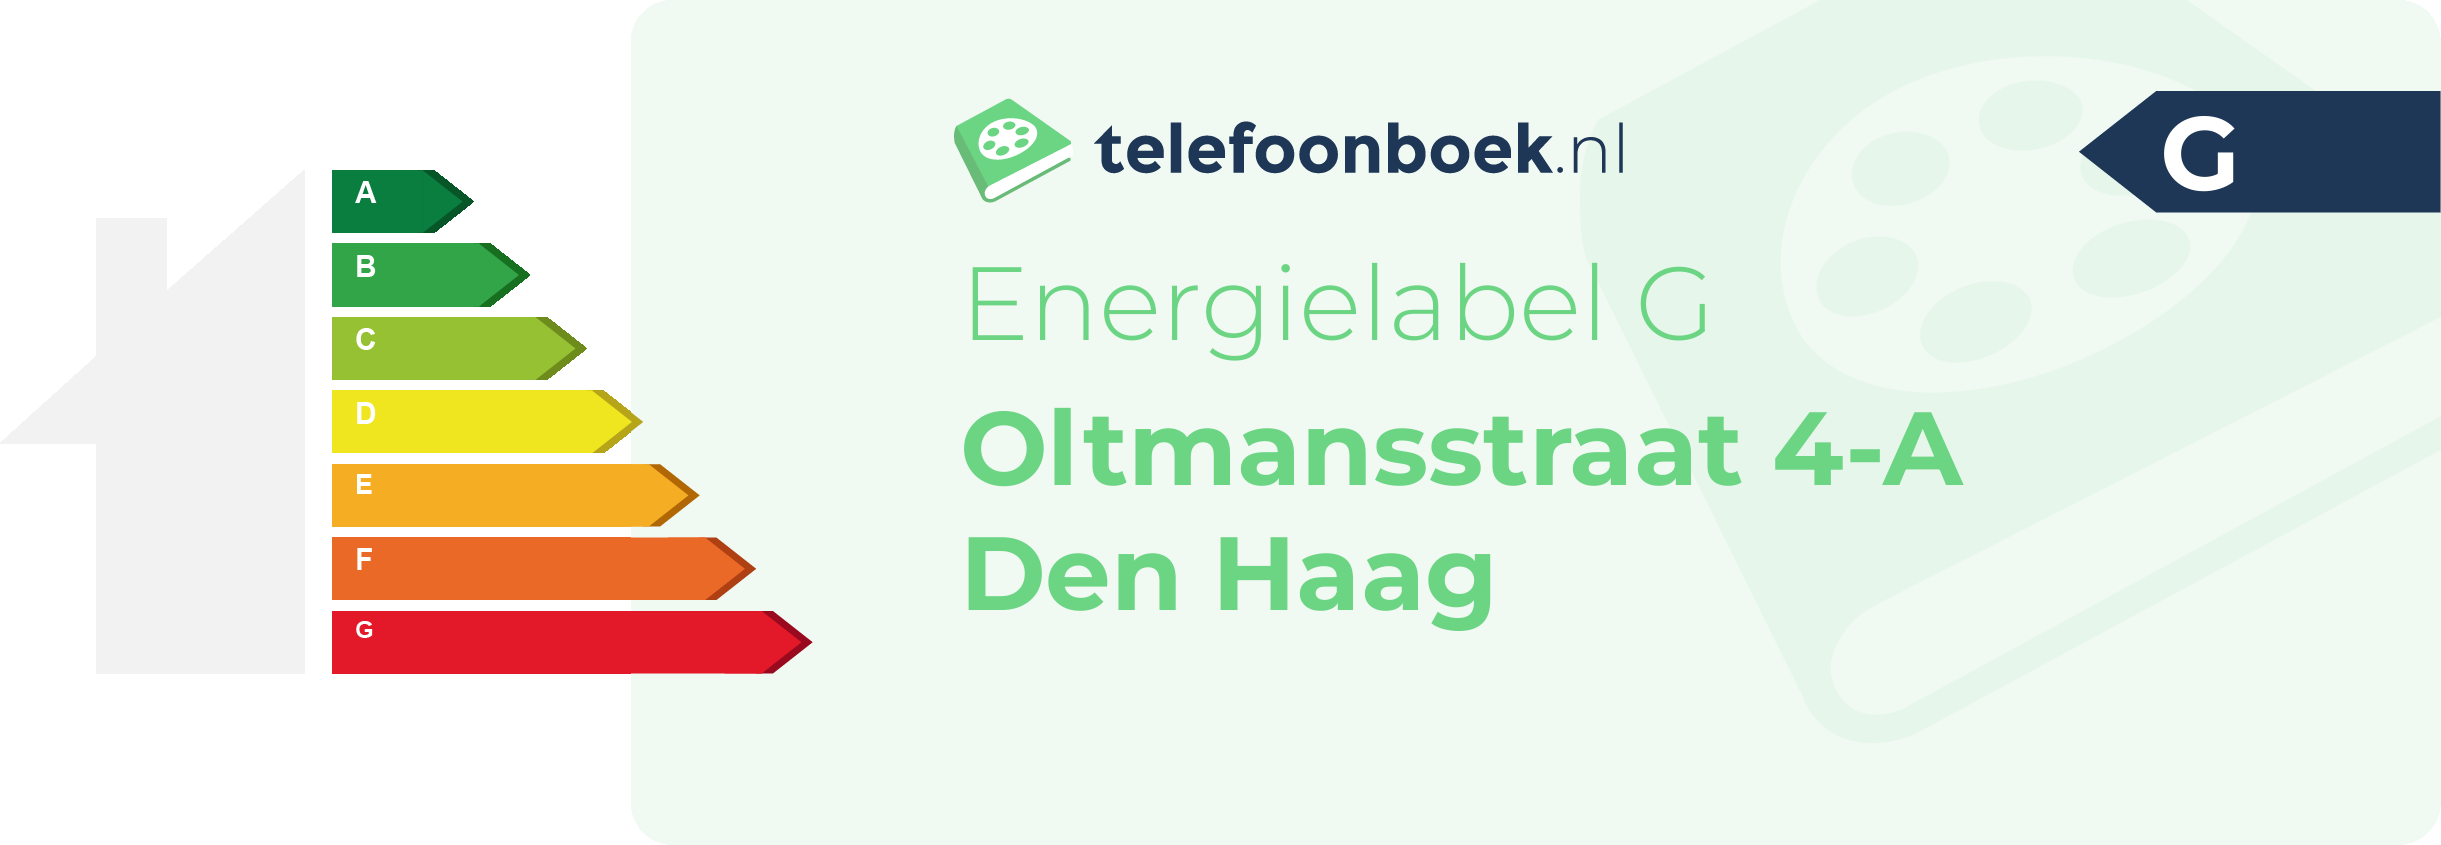 Energielabel Oltmansstraat 4-A Den Haag